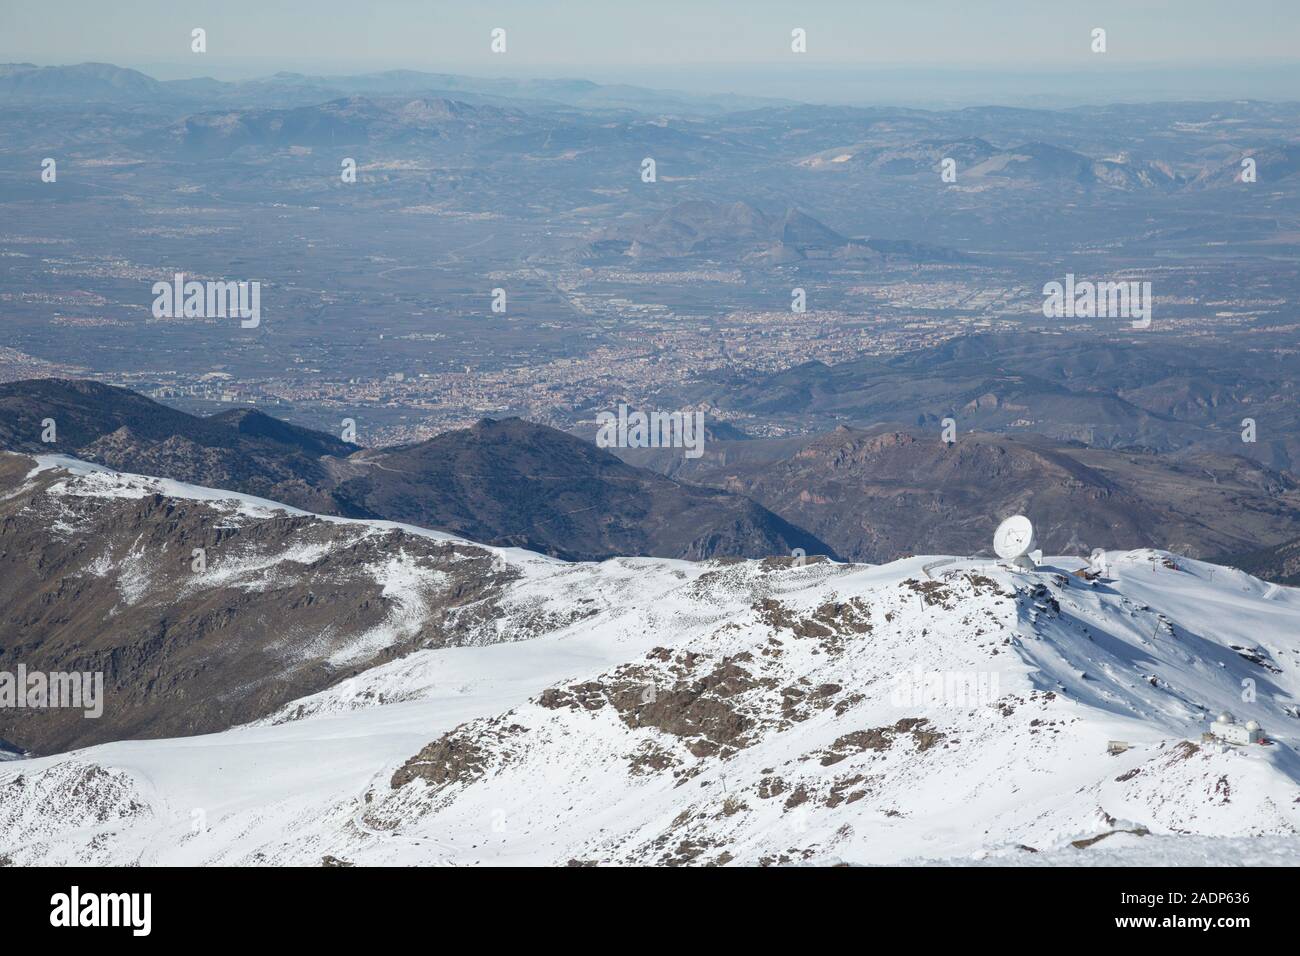 L'IRAM radio astronomy telespcope dans les montagnes de la Sierra Nevada, avec la ville de Grenade dans la distance ci-dessous. Andalousie, Espagne Banque D'Images